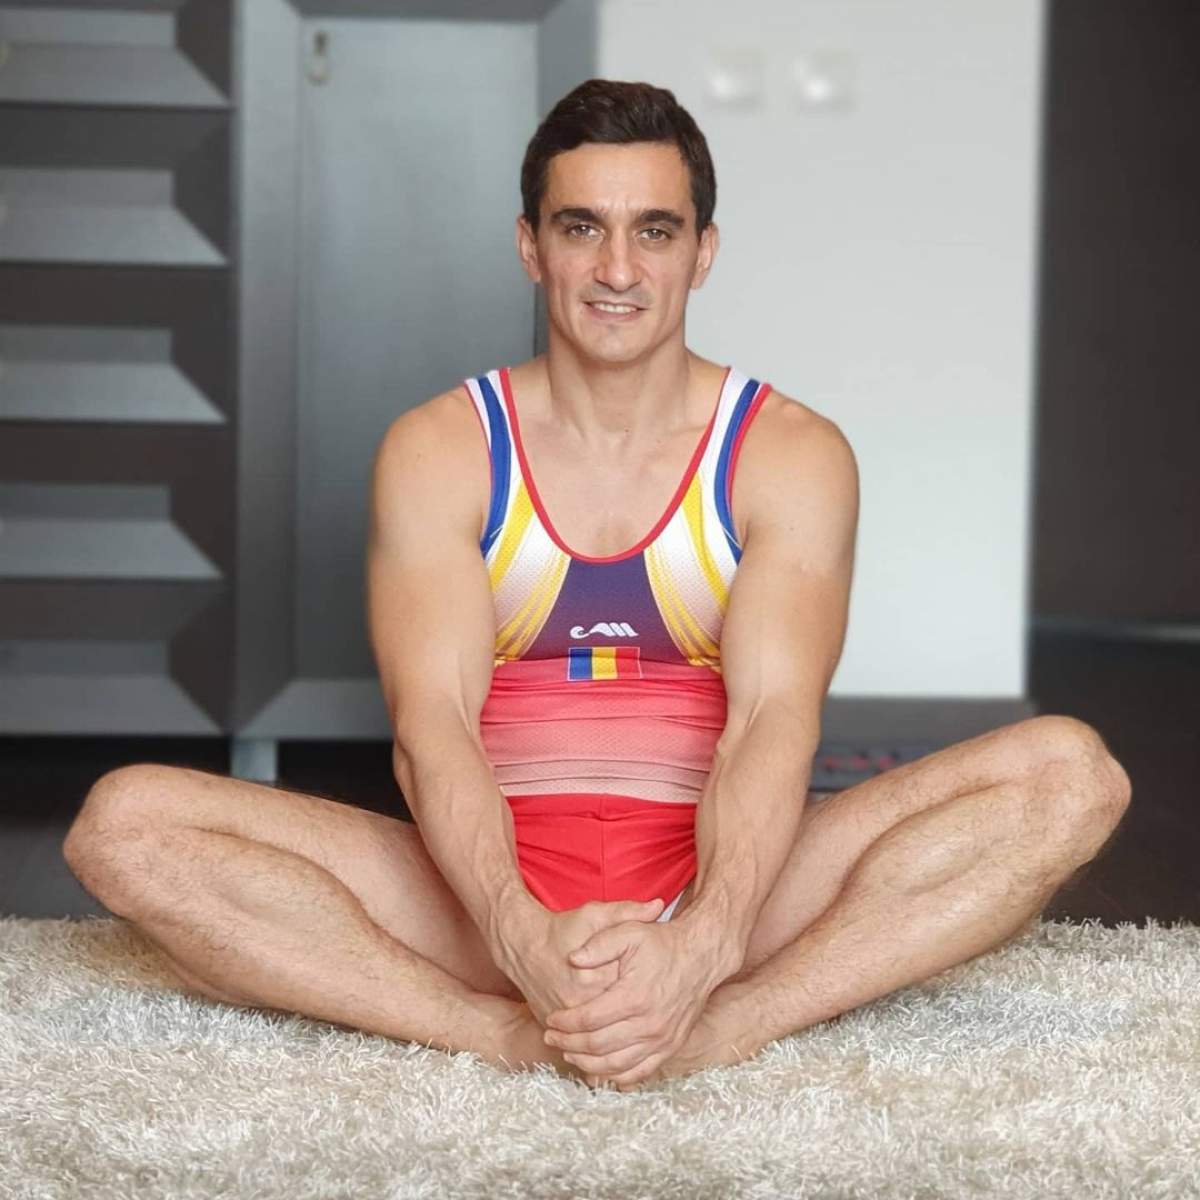 Marian Drăgulescu s-a pozat pe podea, în poziție speficică gimnasticii